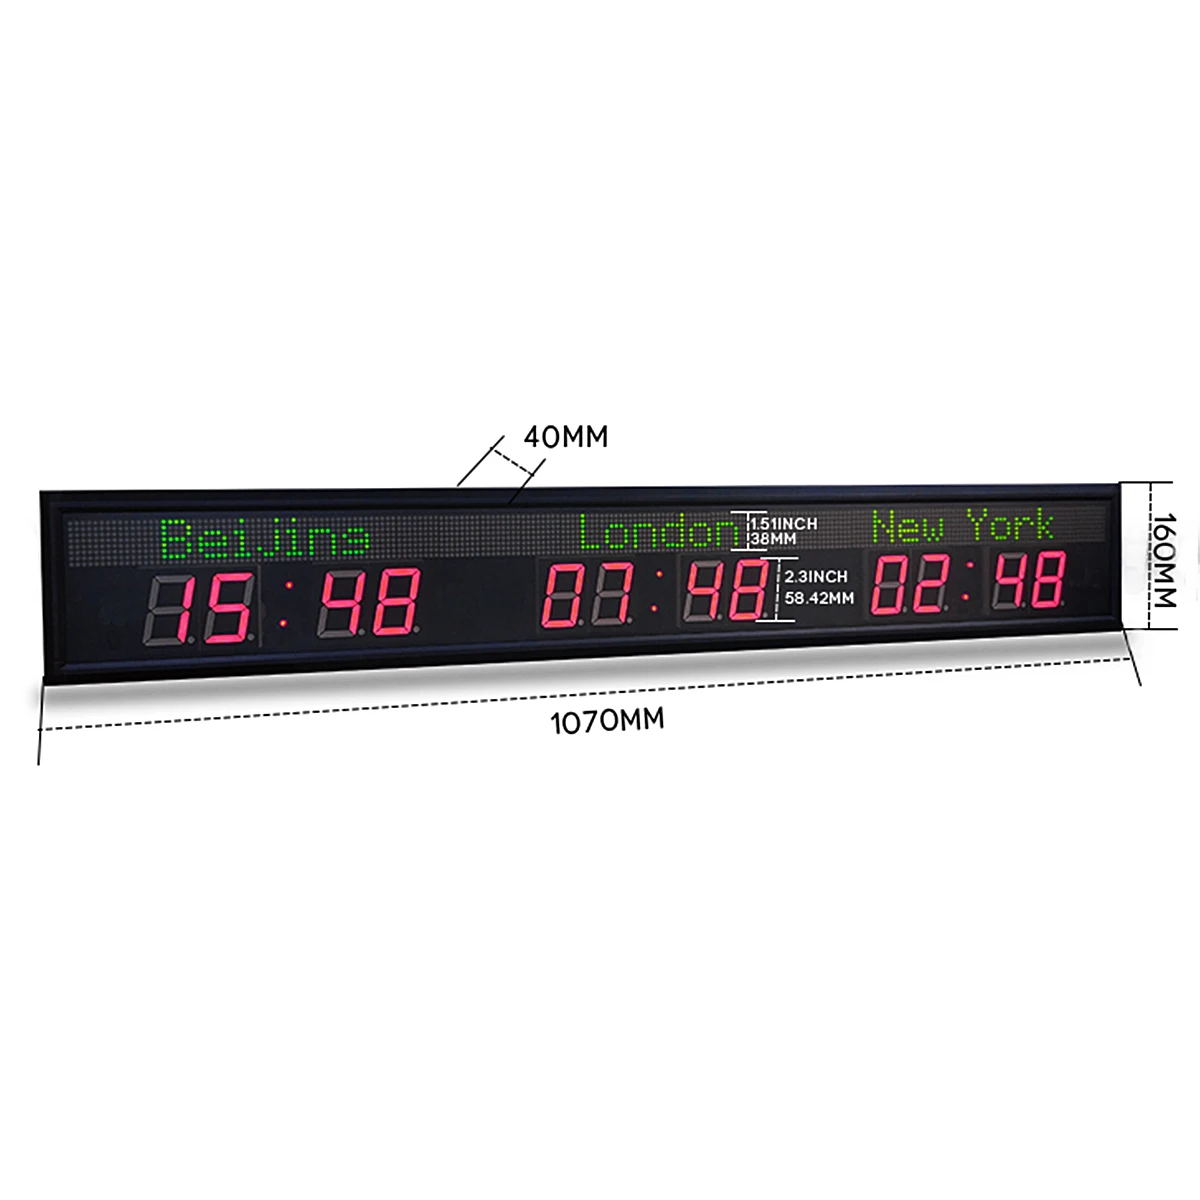 デジタル世界時計 日付表示付 ワールドクロック 壁掛け時計 ウォールクロック